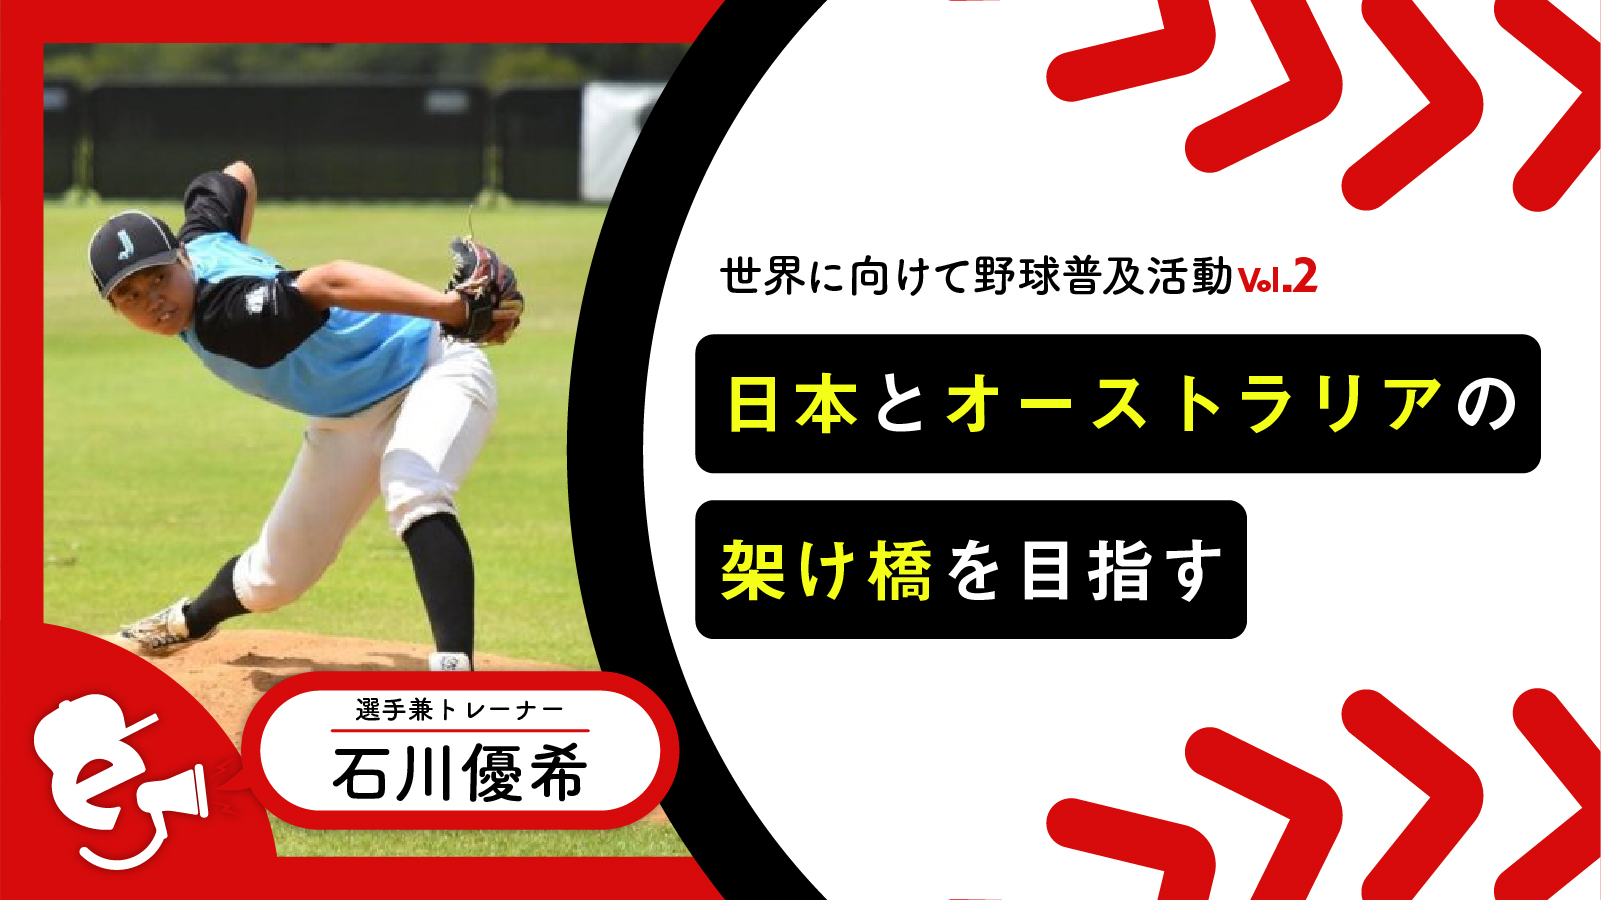 「世界に向けて野球普及活動Vol.2」現役選手として活躍しながら日本とオーストラリアの架け橋を目指す石川優希の挑戦